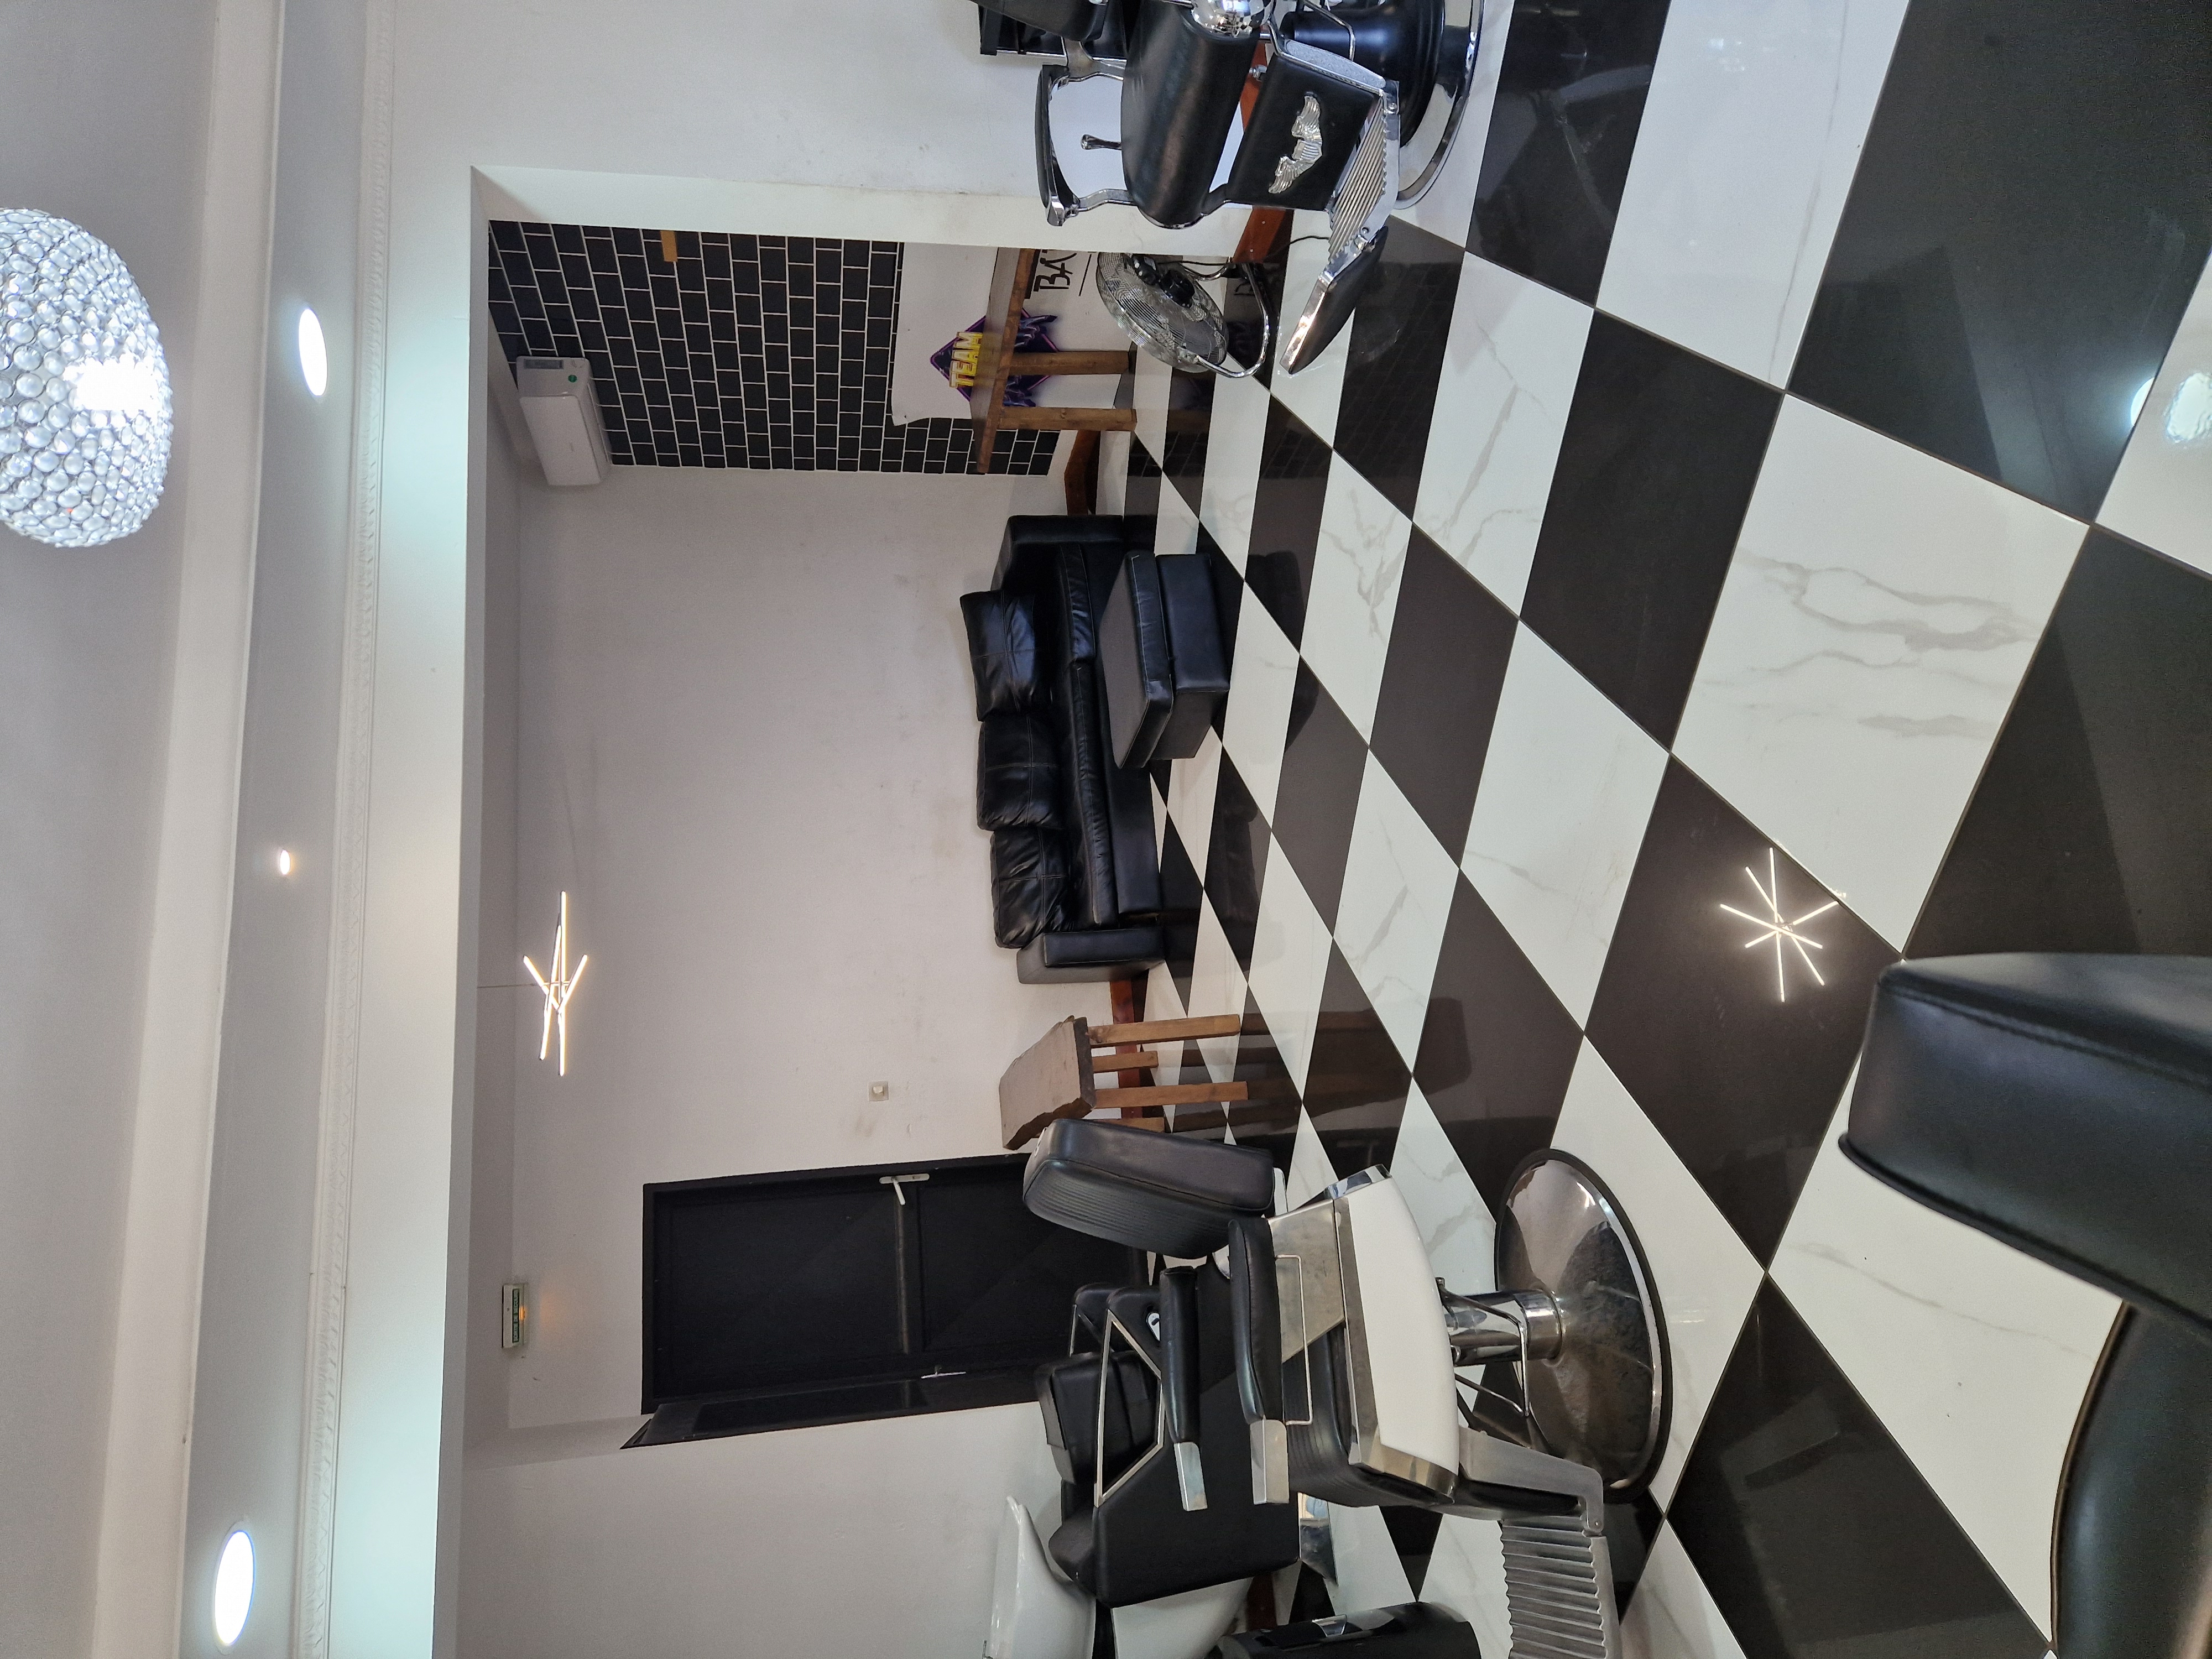 Salon coiffure barbier,  bien situé, clientèle fideliser,  bon potentiel.  Parking.   Vend cause double emploi.